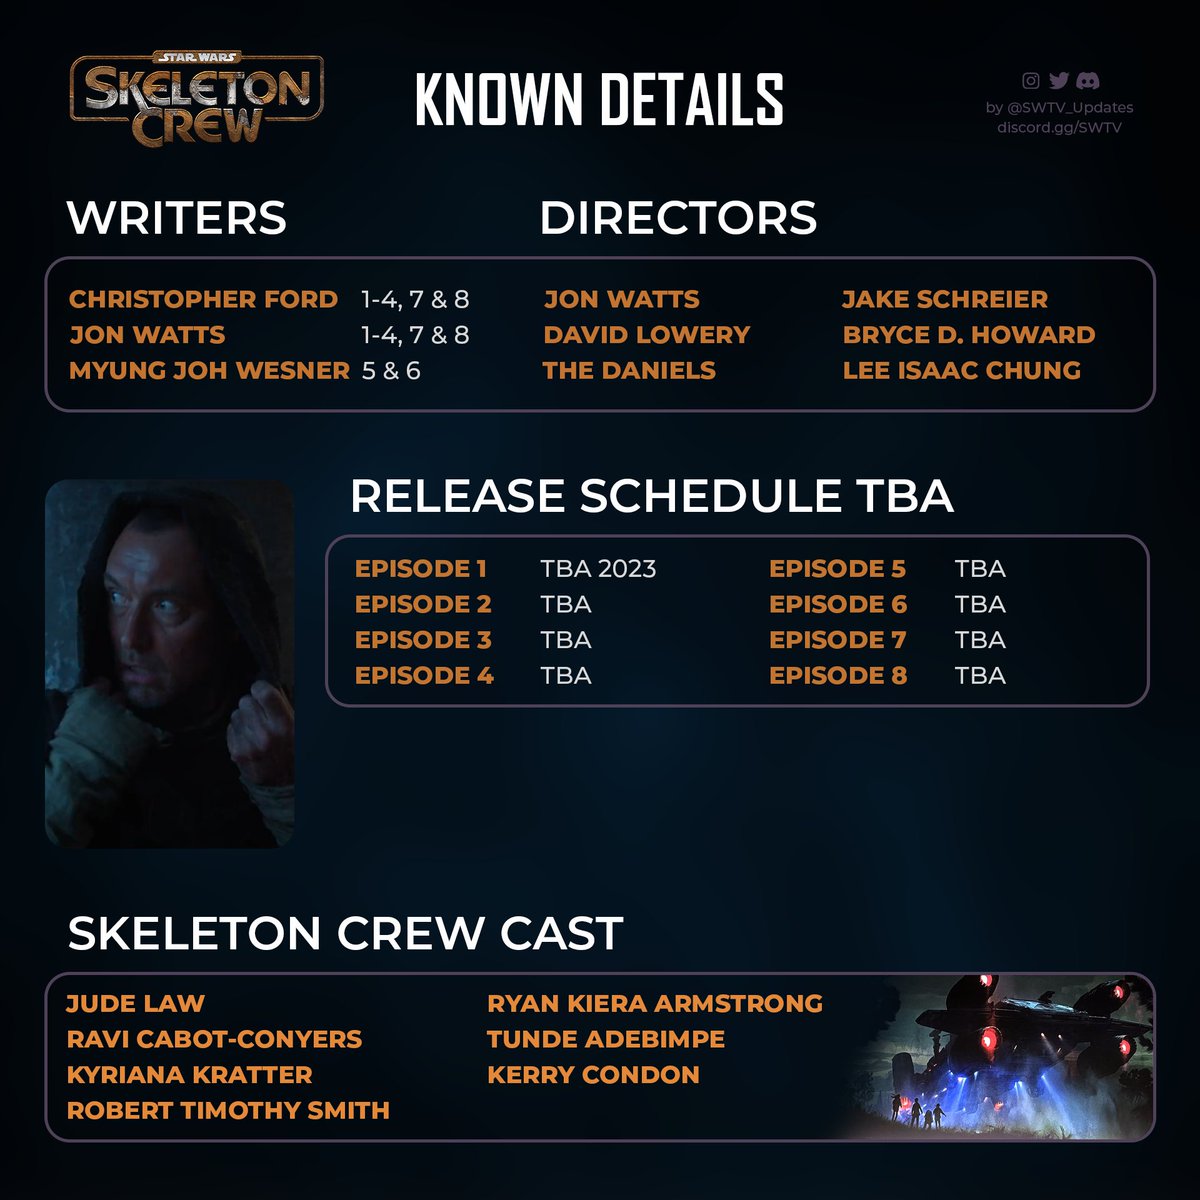 ✨ Star Wars: #SkeletonCrew - Known details!

Premiering in 2023 on Disney+

(3/3)